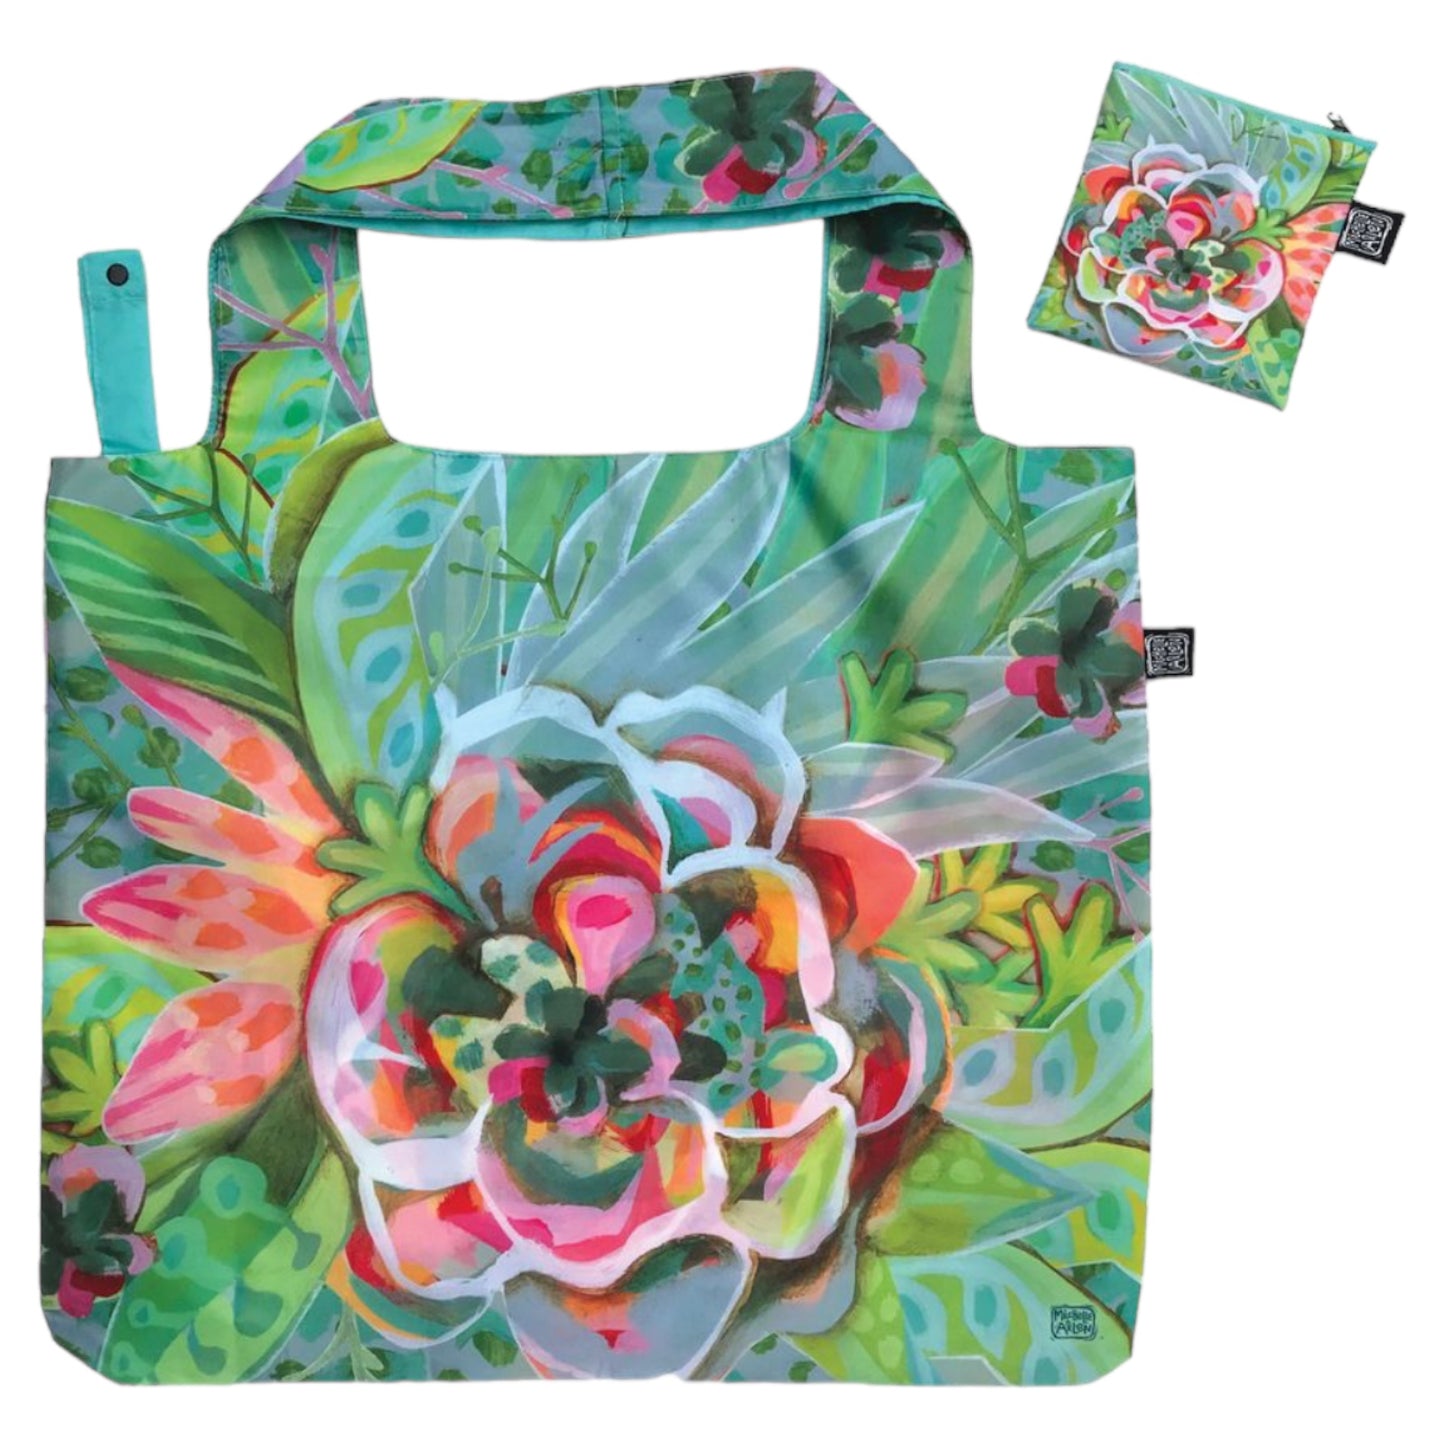 Lemon Myrtle Soap Allen Designs Bag Floral Garden Gift